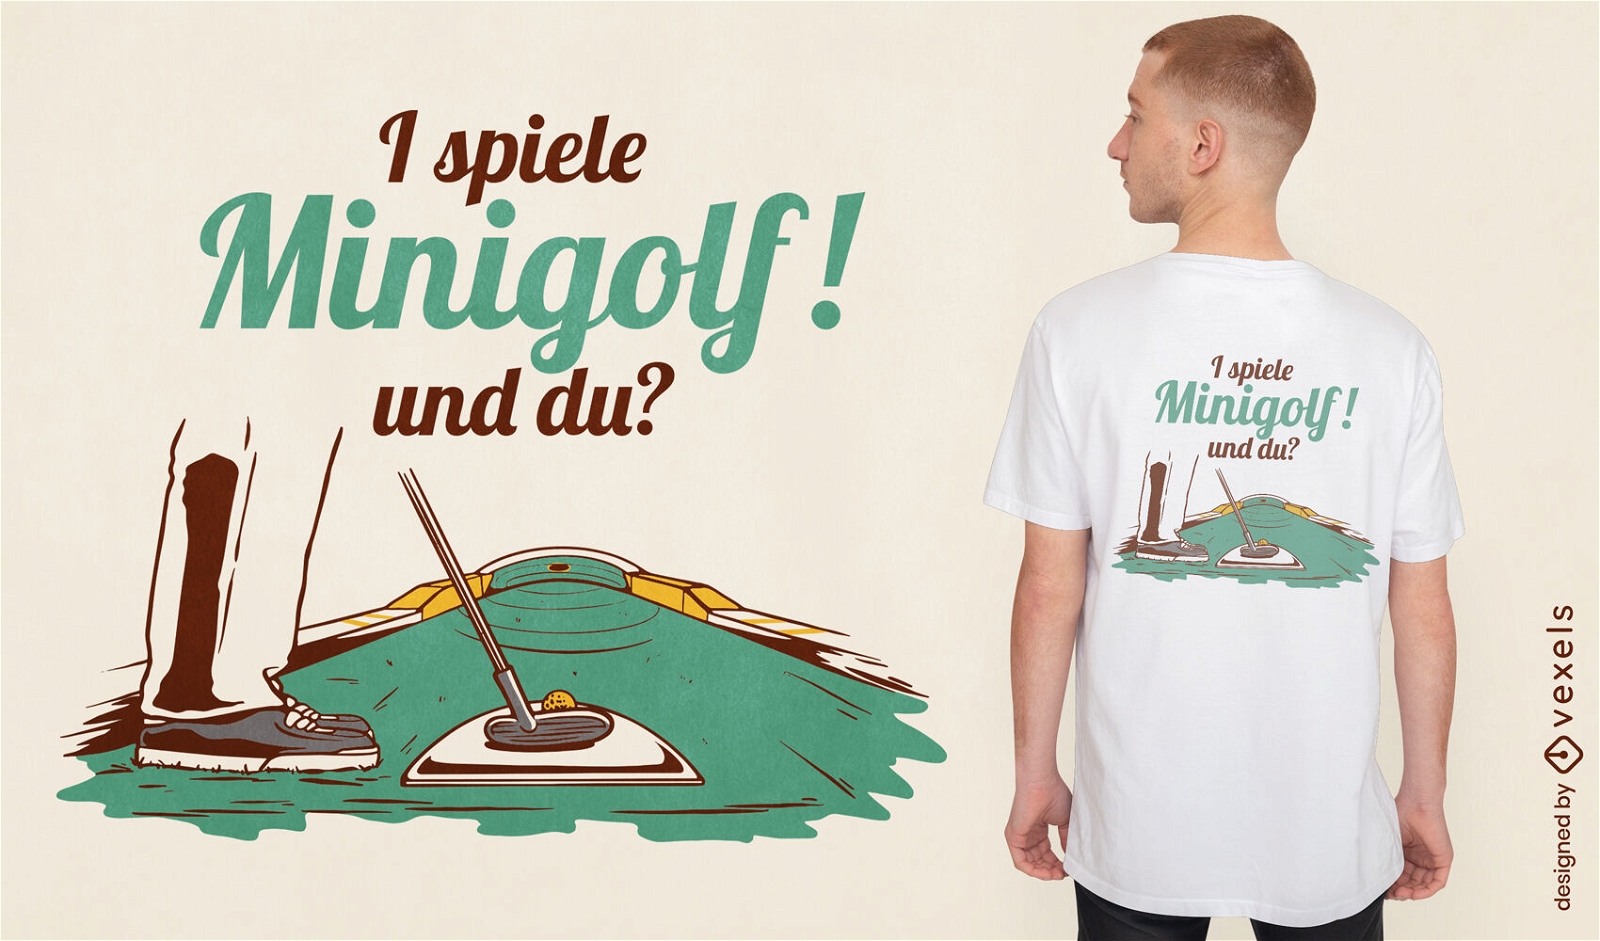 Minigolf sport match t-shirt design